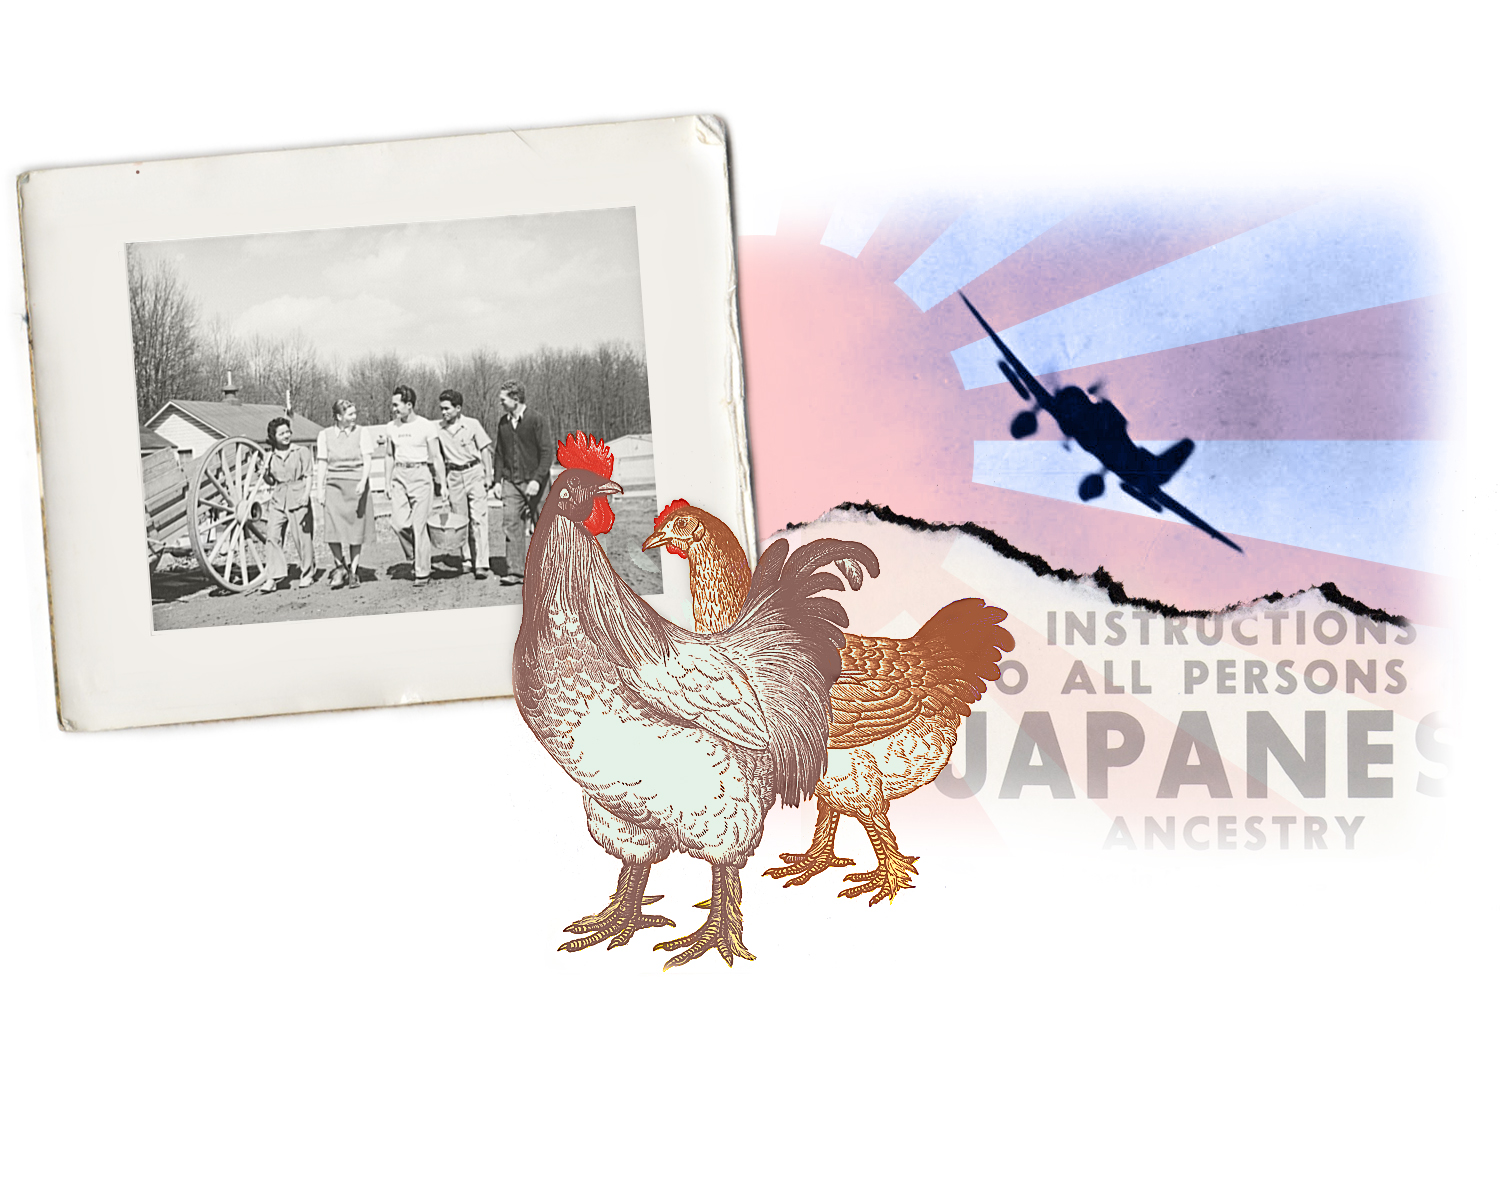 Interned Japanese Chicken Farmers in WW2